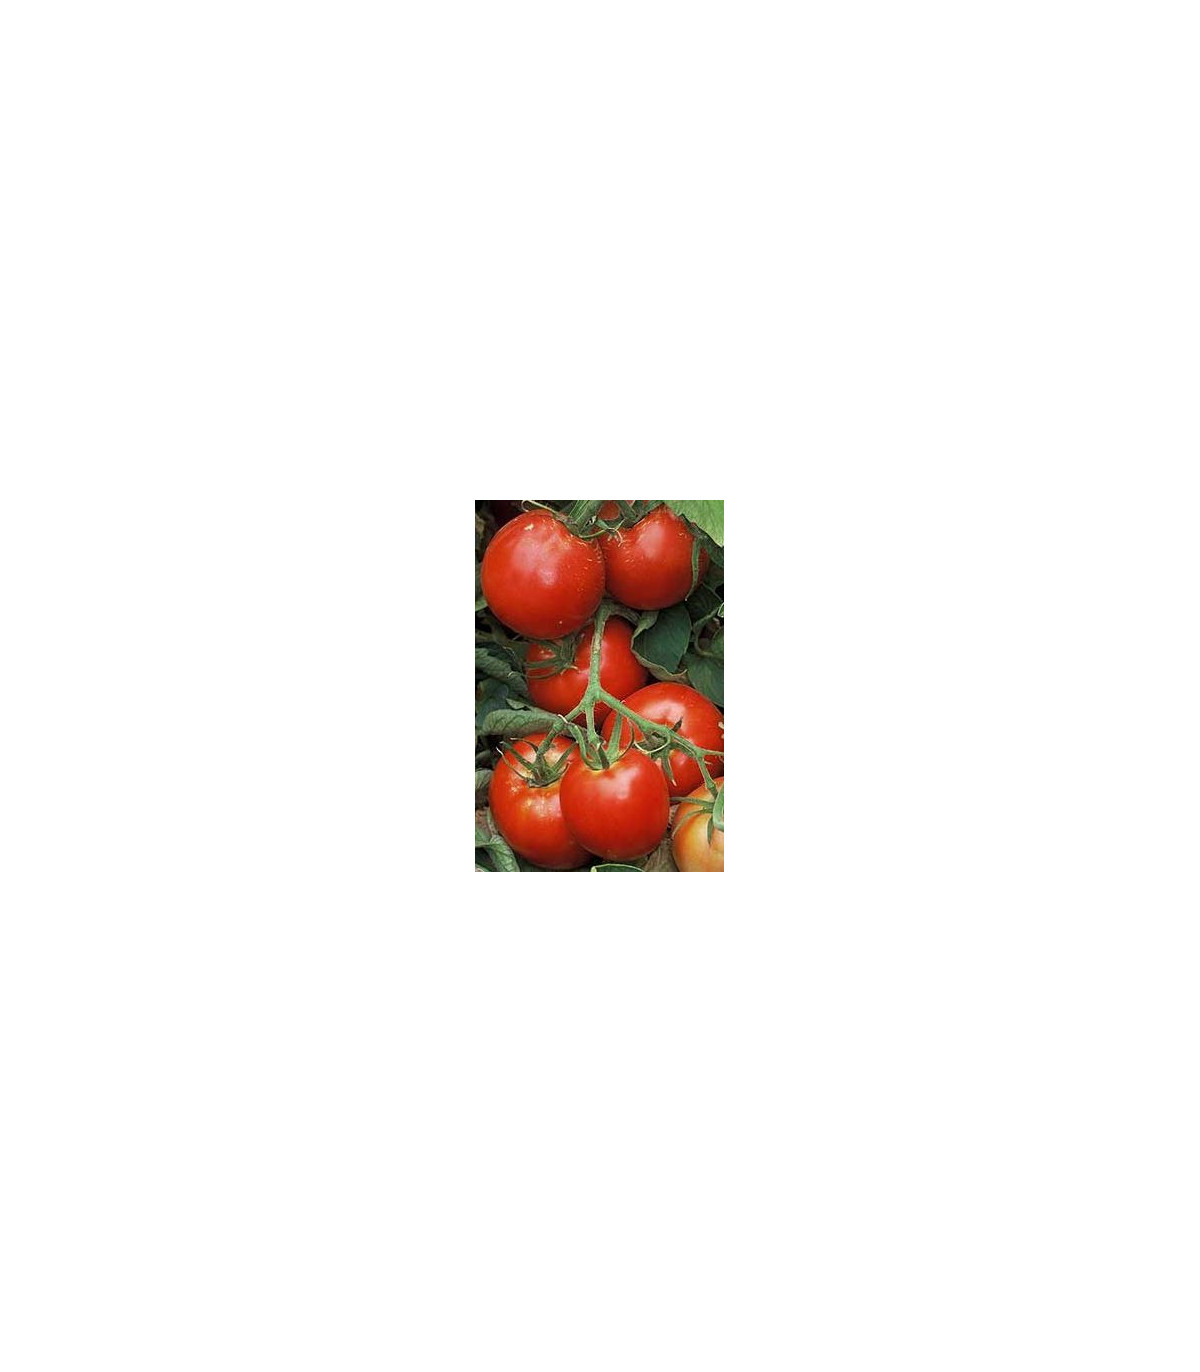 Paradajka Legenda - Lycopersicon esculentum - pôvodné odrody paradajok - semená paradajok - 6 ks